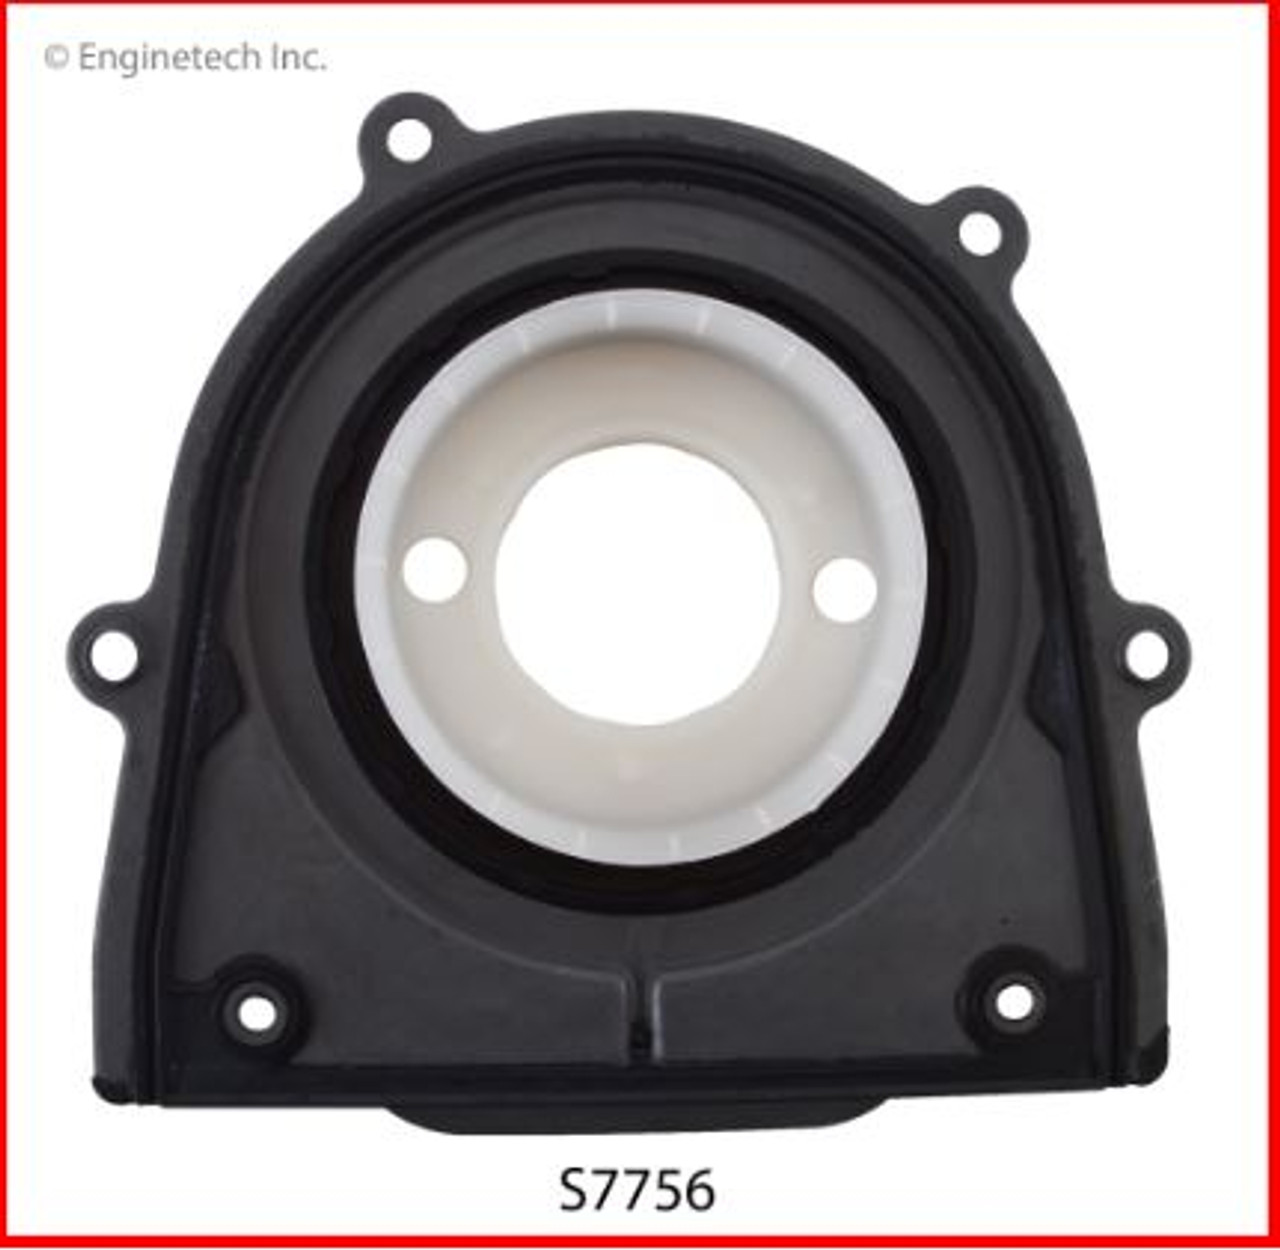 Crankshaft Seal - 2009 Mazda 3 2.3L (S7756.J92)